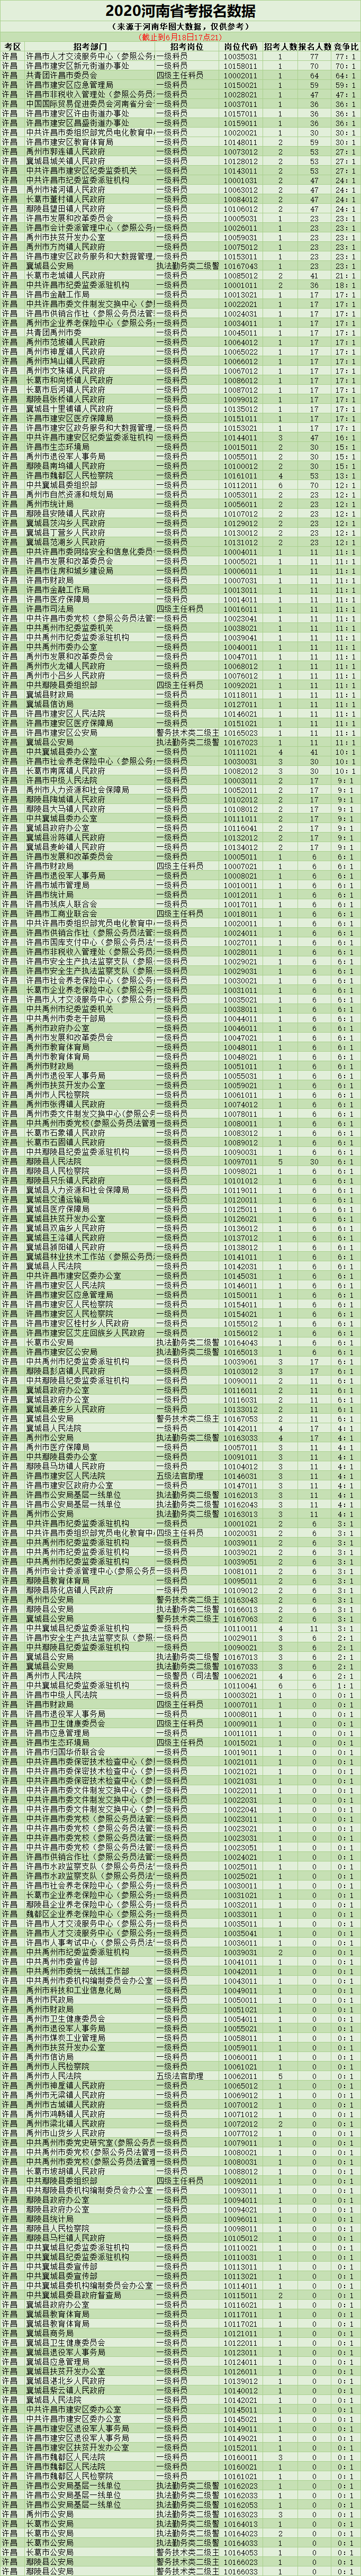 2020河南省考报名人数统计-考区岗位竞争比(截止6月18日17:21)